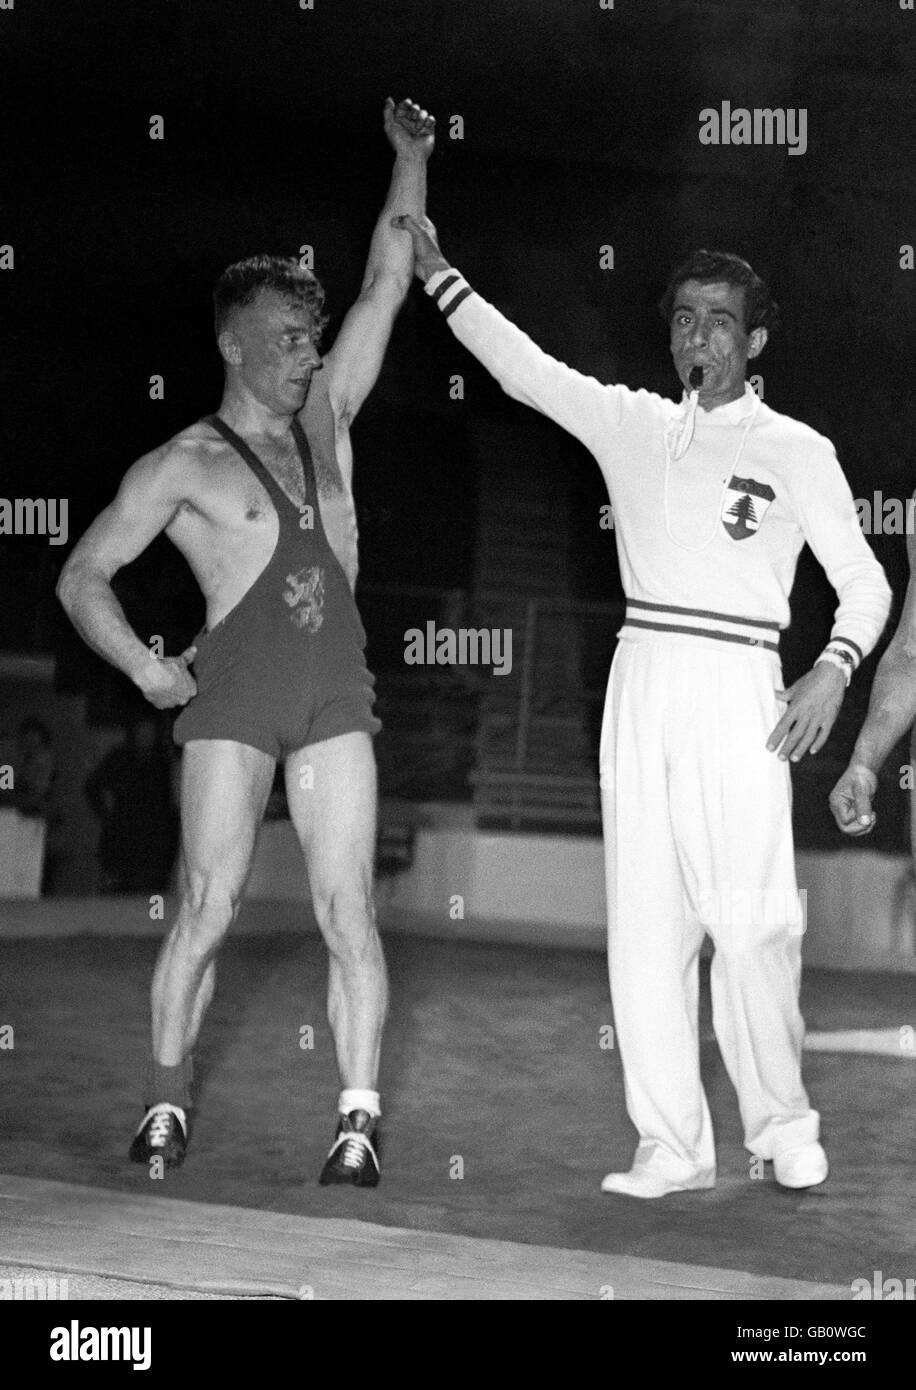 Giochi Olimpici di Londra 1948 - Wrestling - Earls Court. Foto di uno dei vincitori proclamato dopo una partita di wrestling in stile greco-romano. Foto Stock